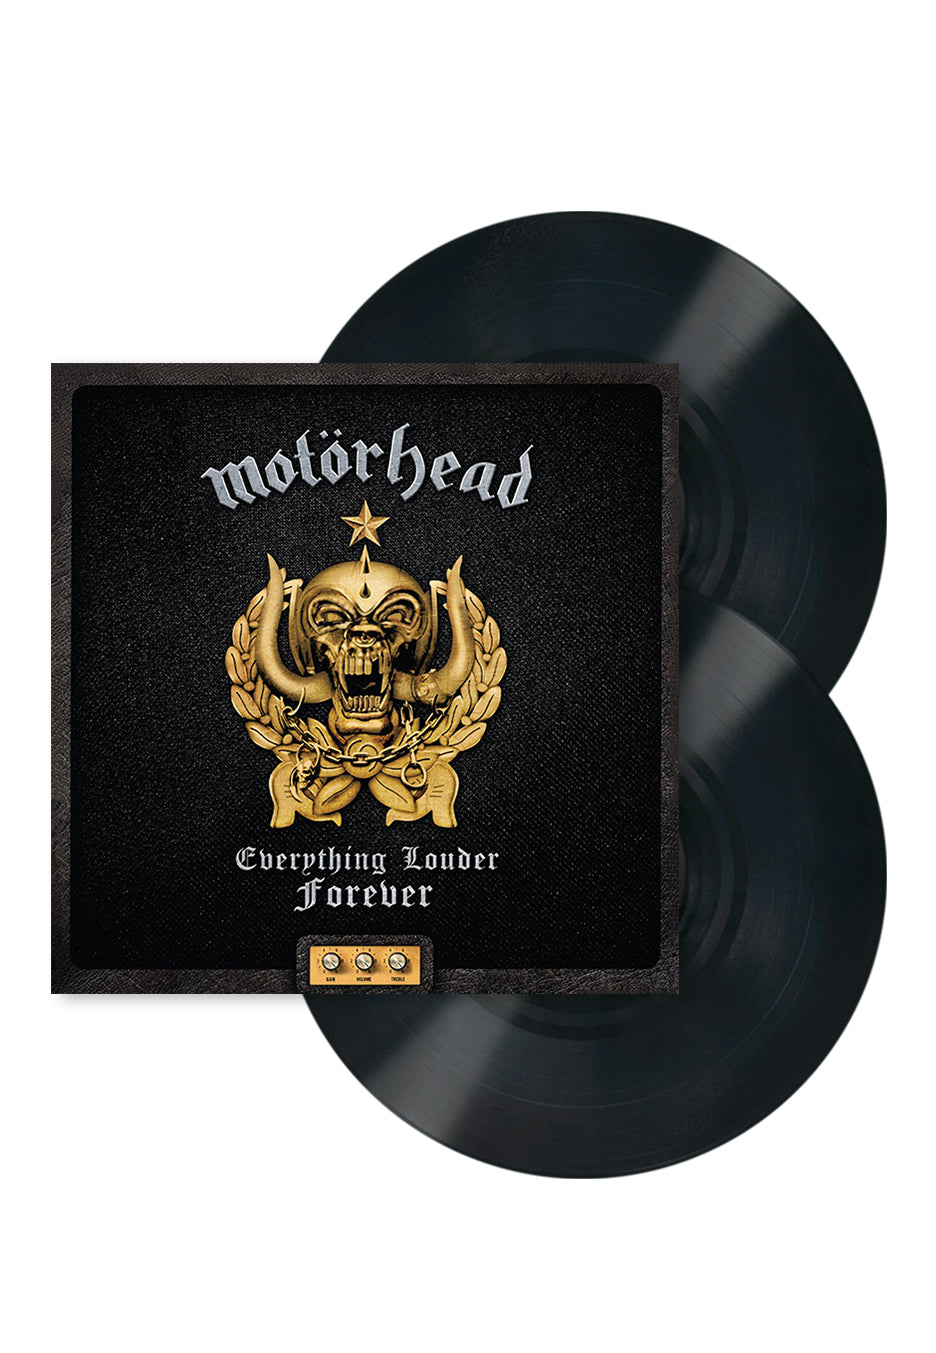 Motörhead - Everything Louder Forever - The Very Best Of - 2 Vinyl